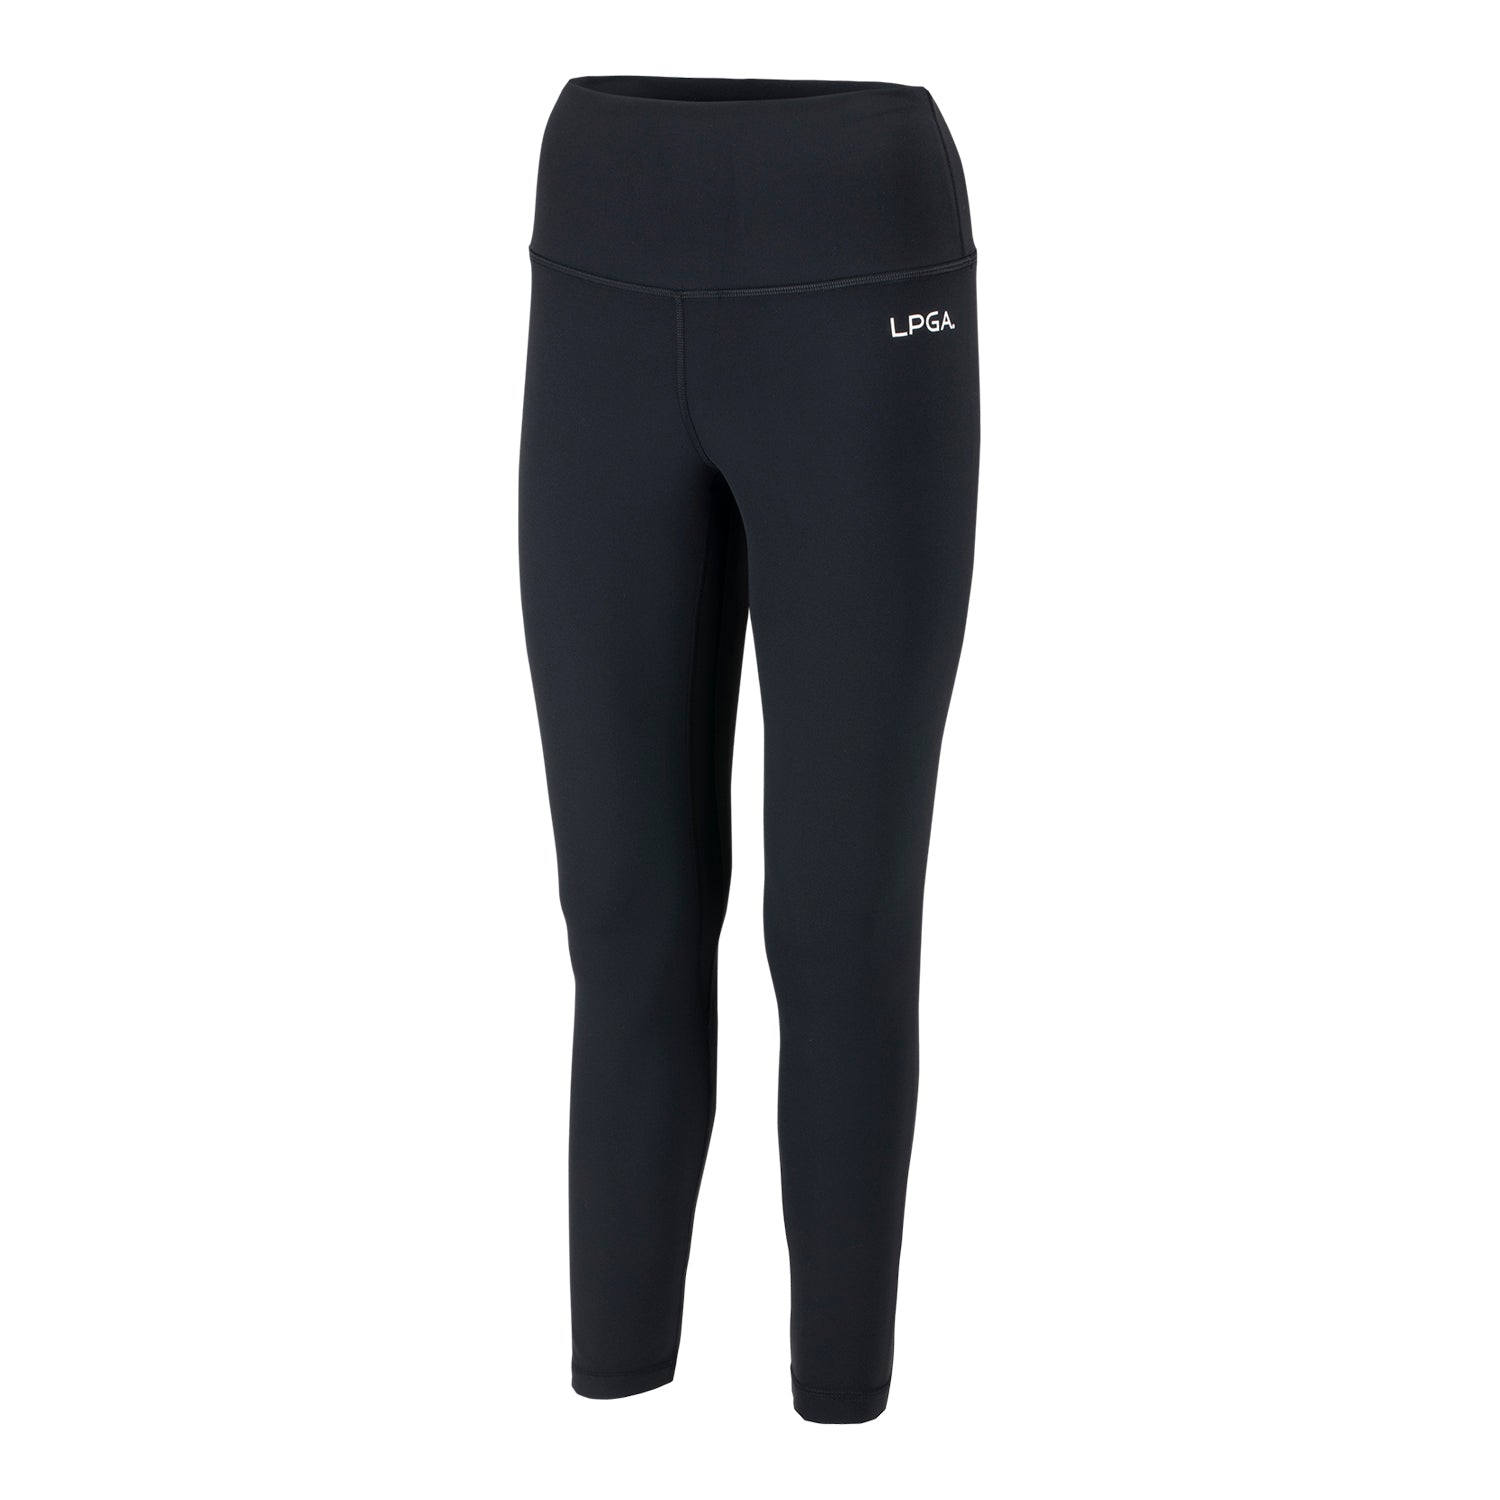 LULULEMON Align high-rise leggings - 25 with pockets  High rise leggings,  Black leggings women, Stretch leggings